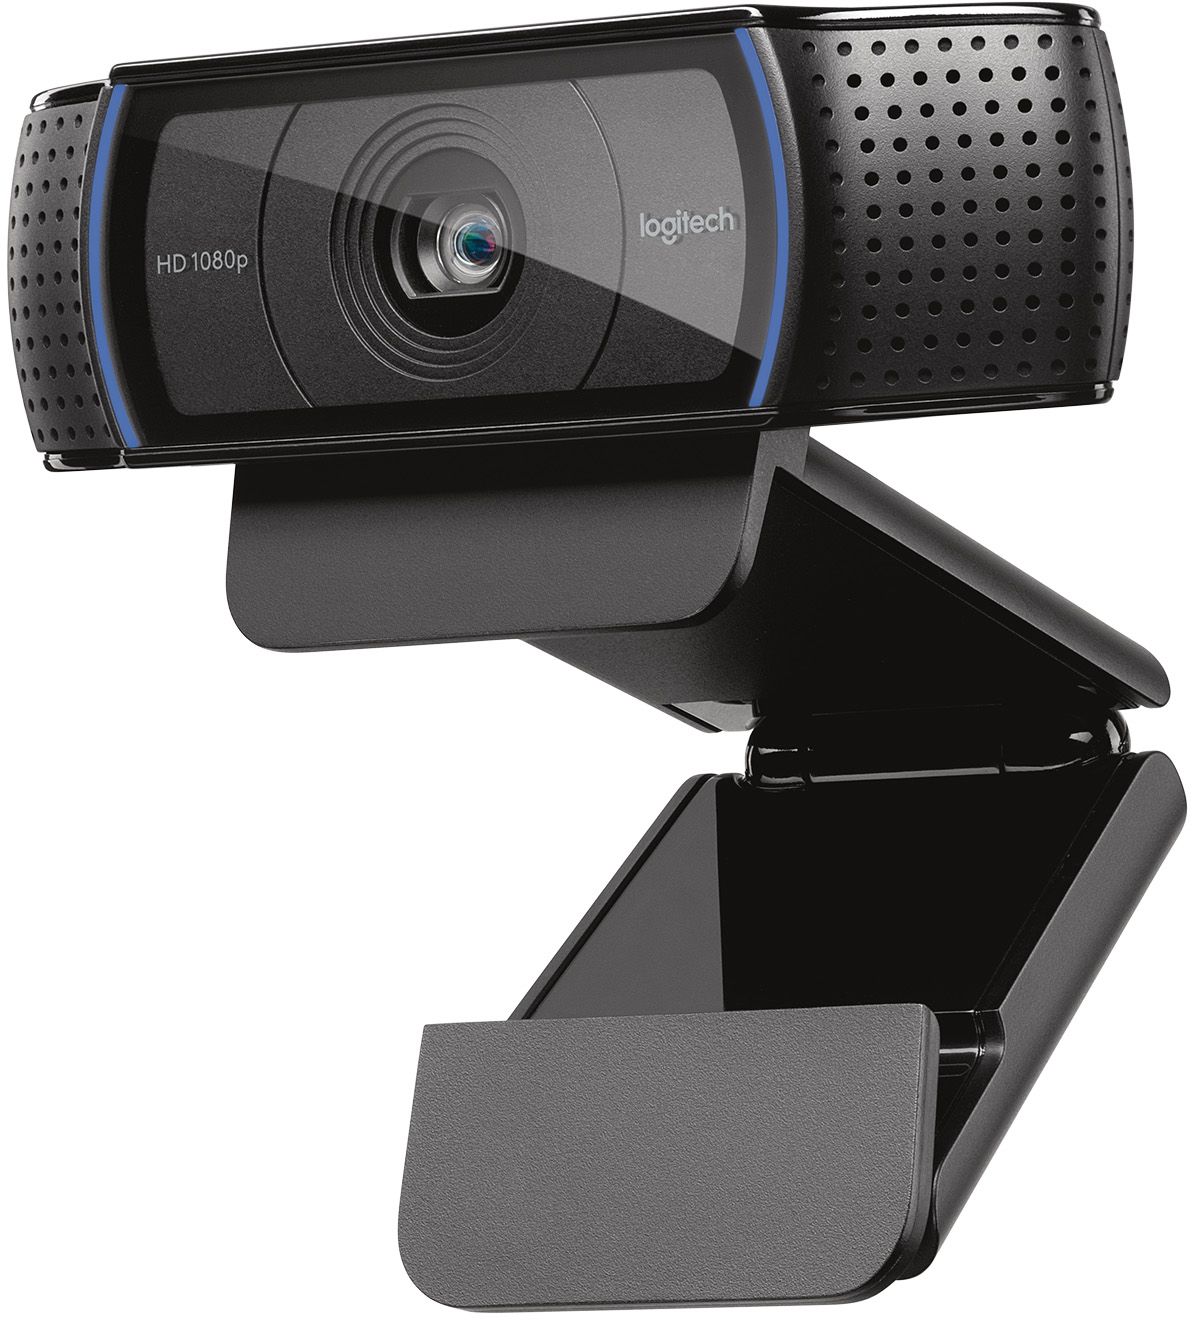 logitech webcam for windows 10 and mac os x 10.12